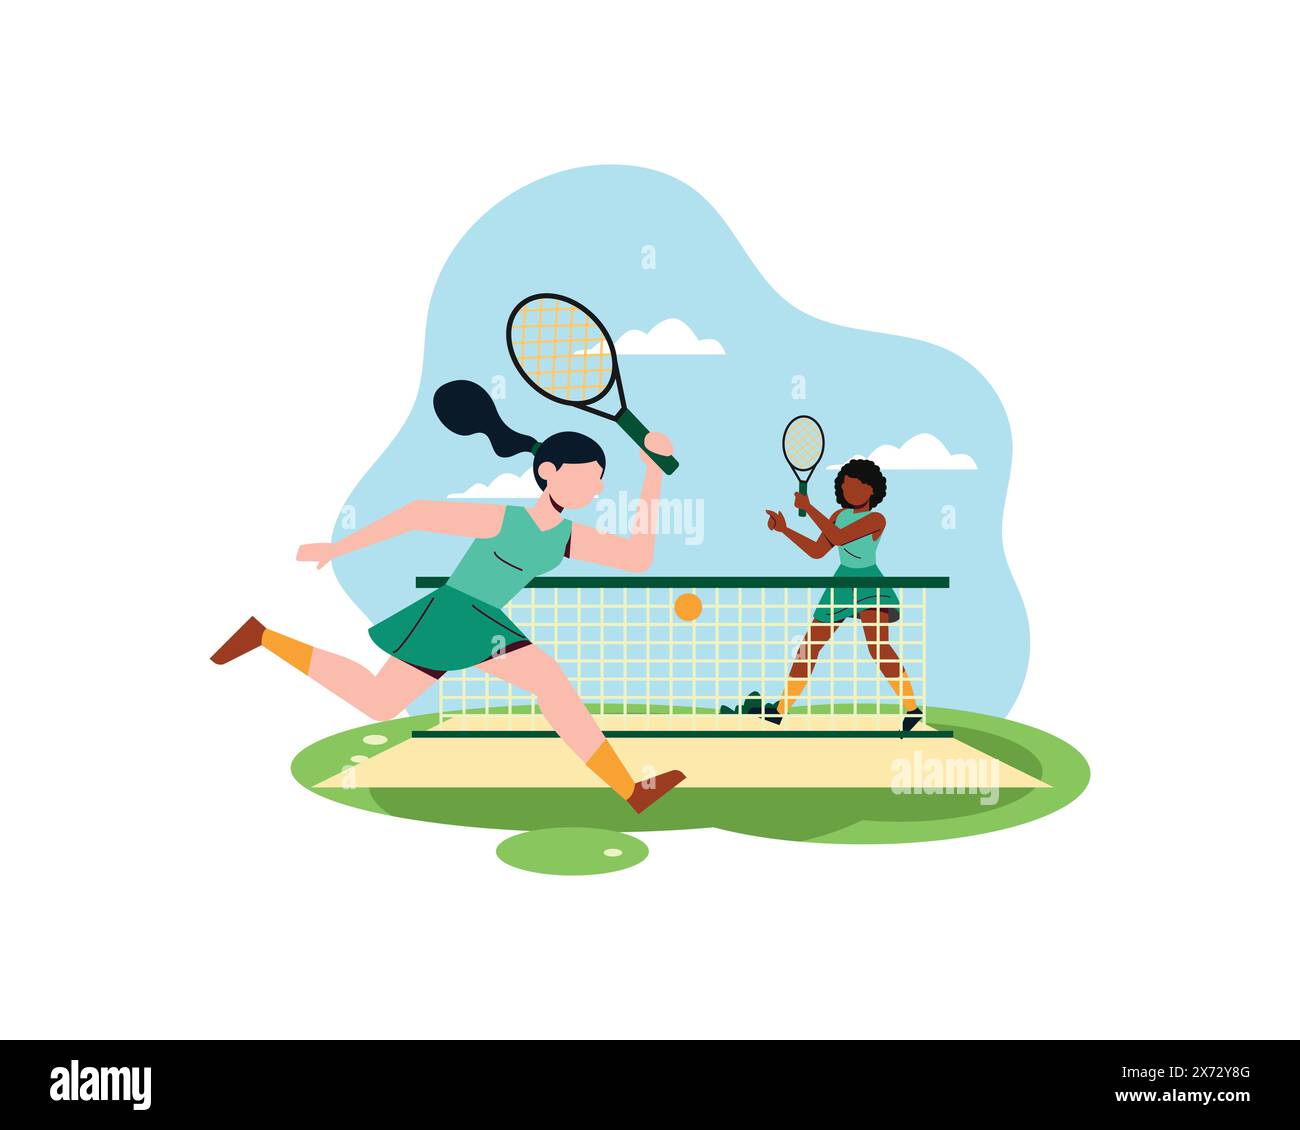 Zwei junge Frauen üben gemeinsam Tennis. Sport- und Freizeitkonzept. Einfaches flaches Design in aktiver, gesunder Lebensweise Illustration Stock Vektor